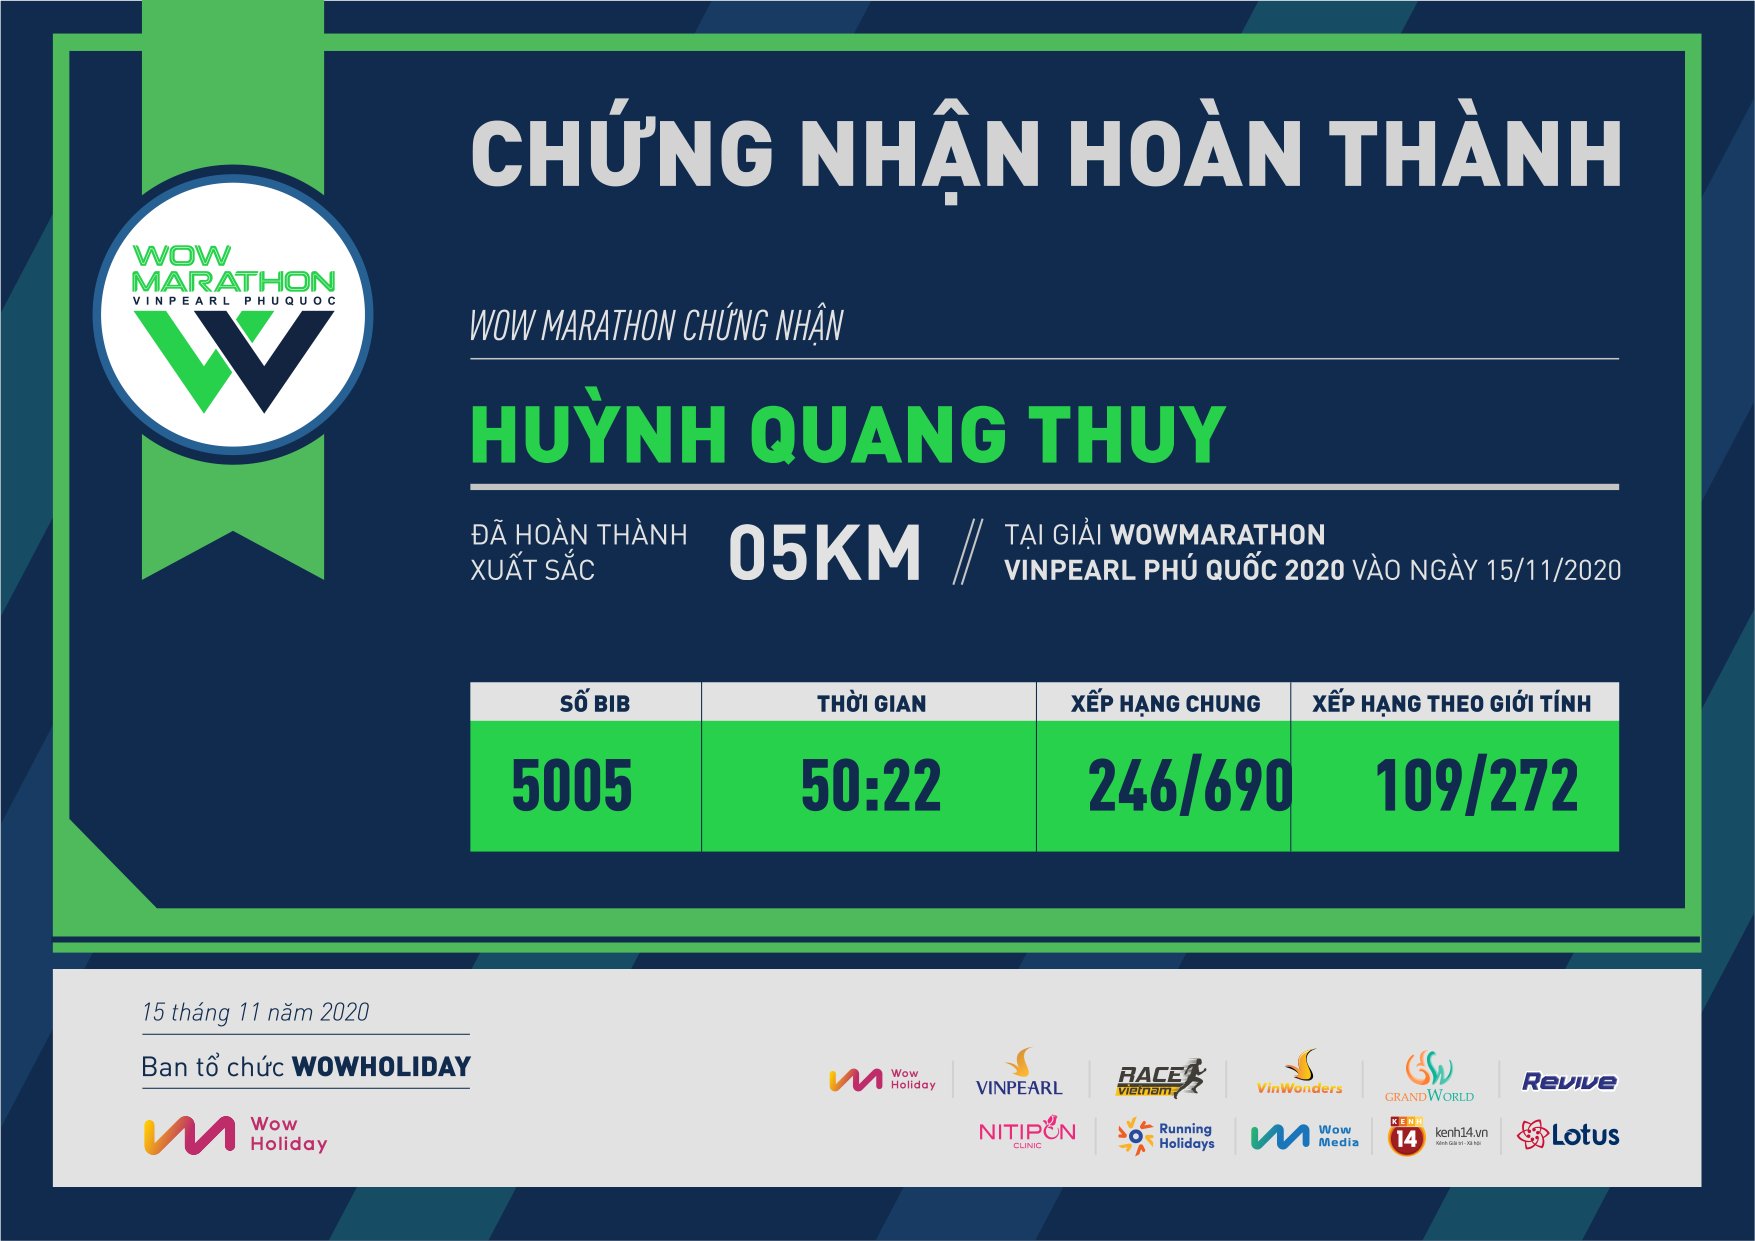 5005 - Huỳnh Quang Thuy